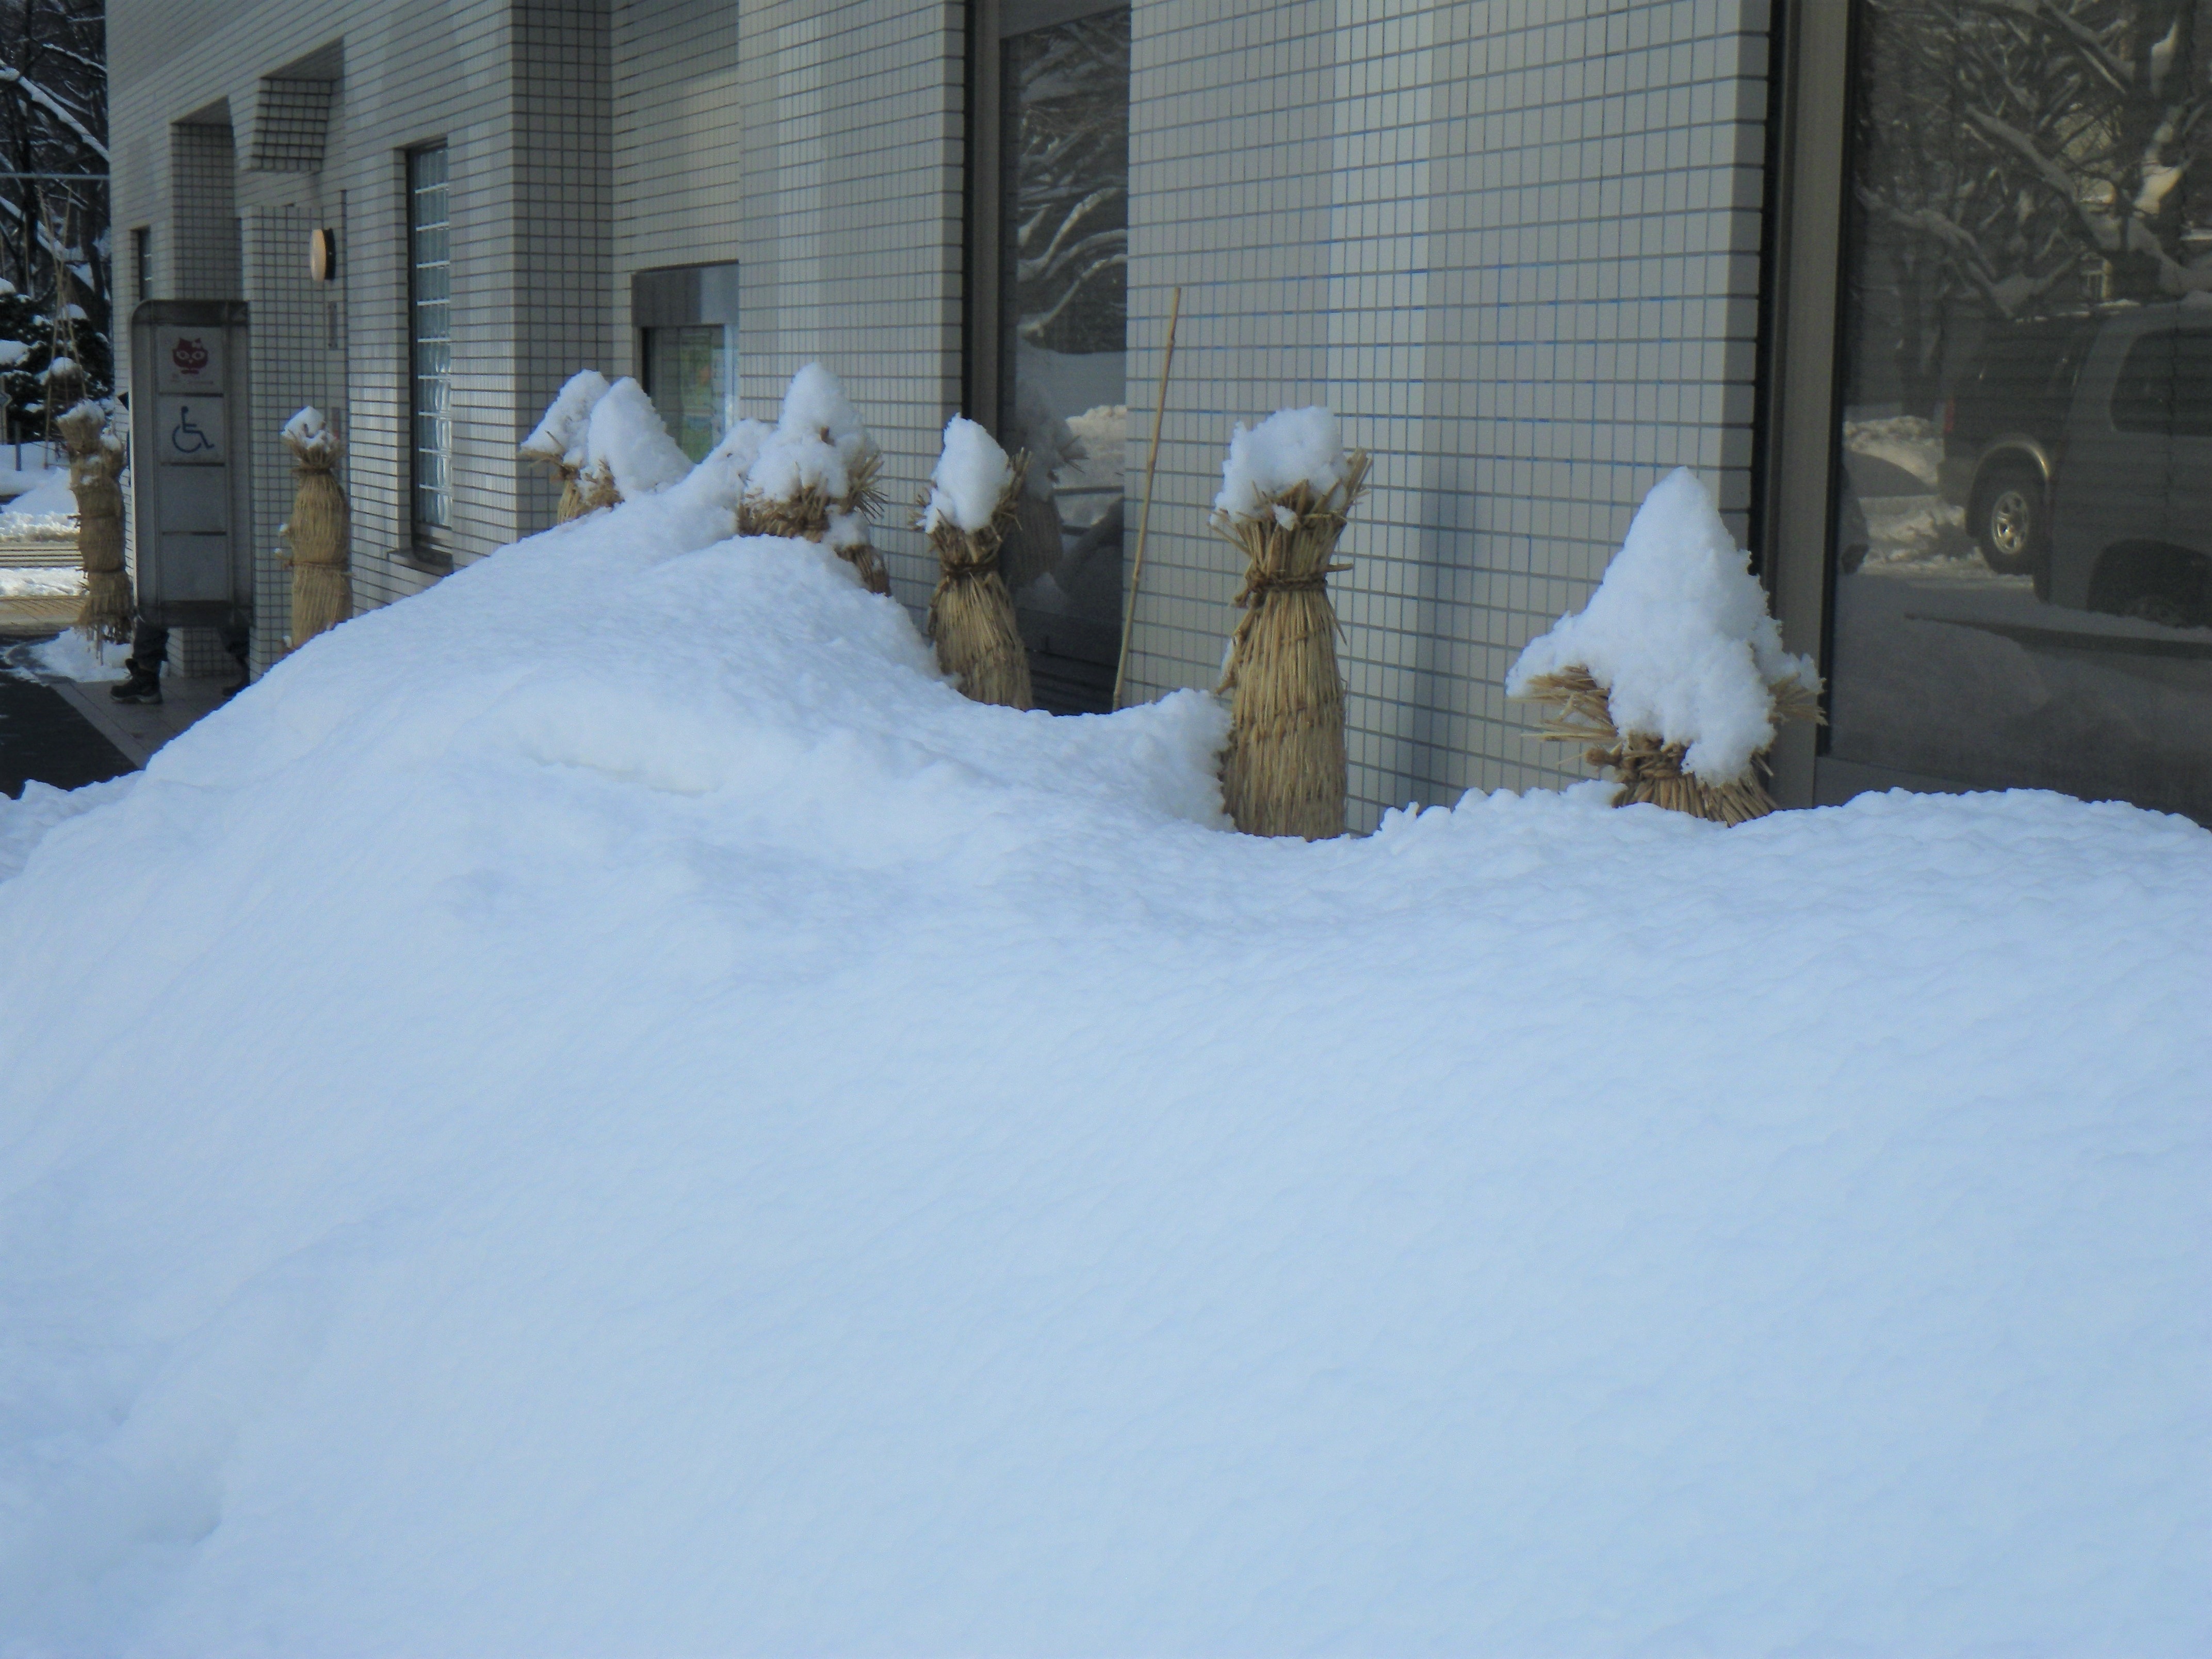 トイレの建物前のむしろで冬囲いされたアジサイが雪に埋もれている画像